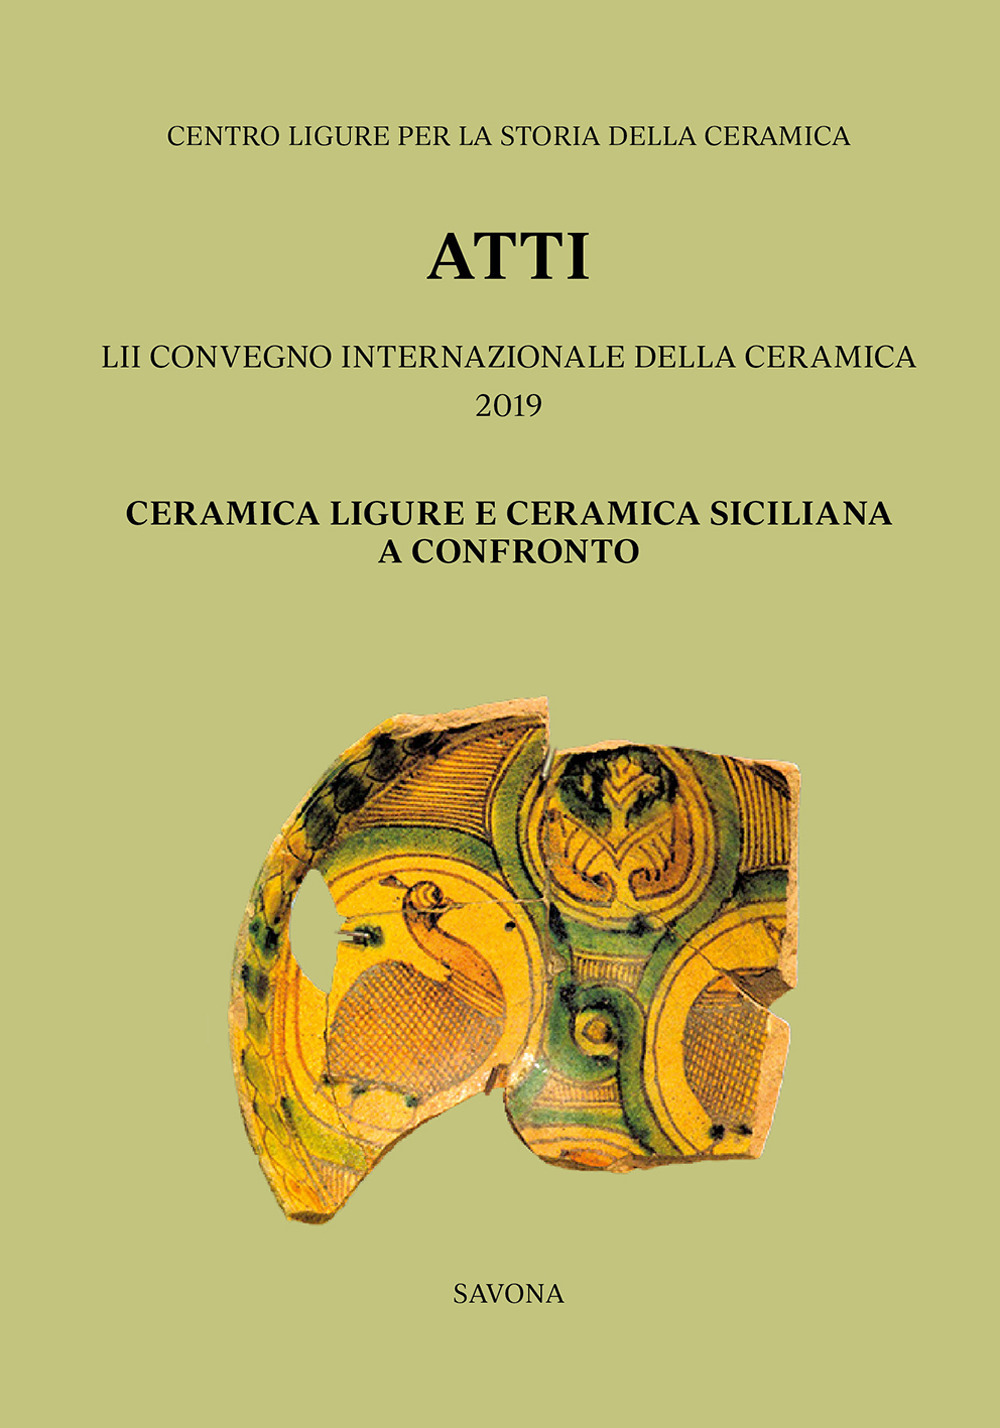 52° Convegno 2019. Ceramica ligure e ceramica siciliana a confronto